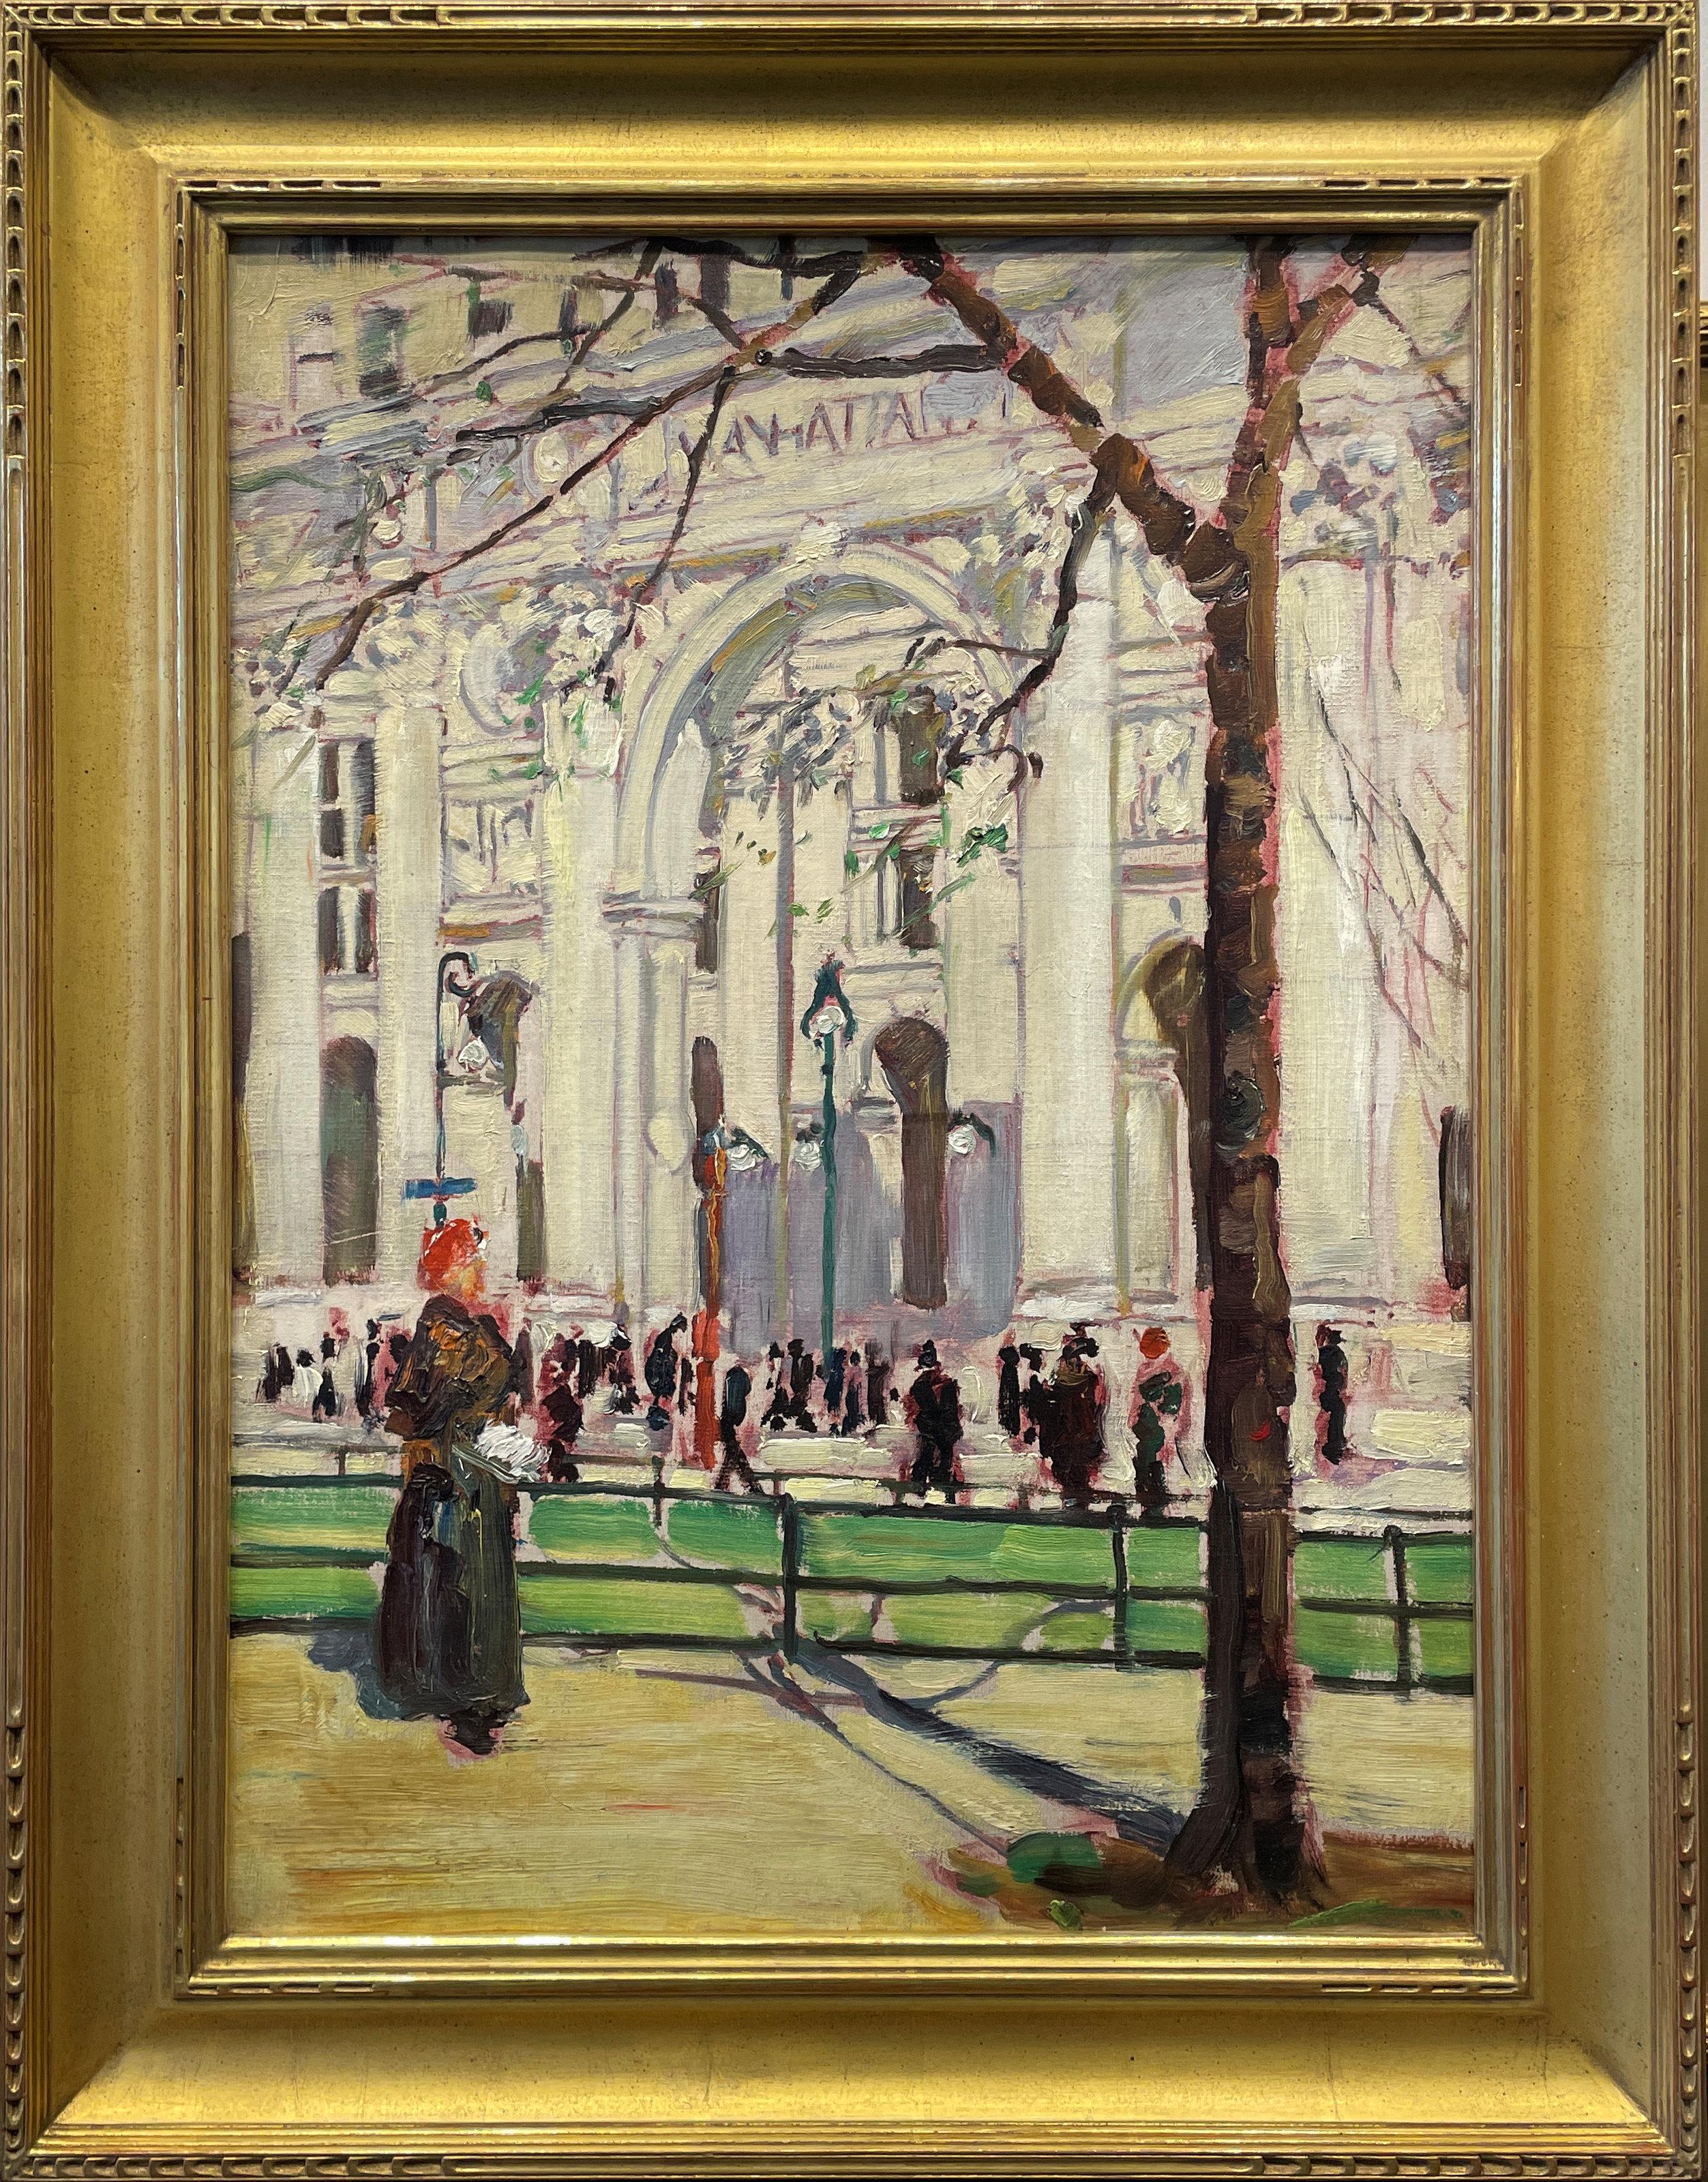 „Municipal Building, Manhattan, New York“, Ruth Anderson, Impressionistische Szene – Painting von Ruth A. Anderson